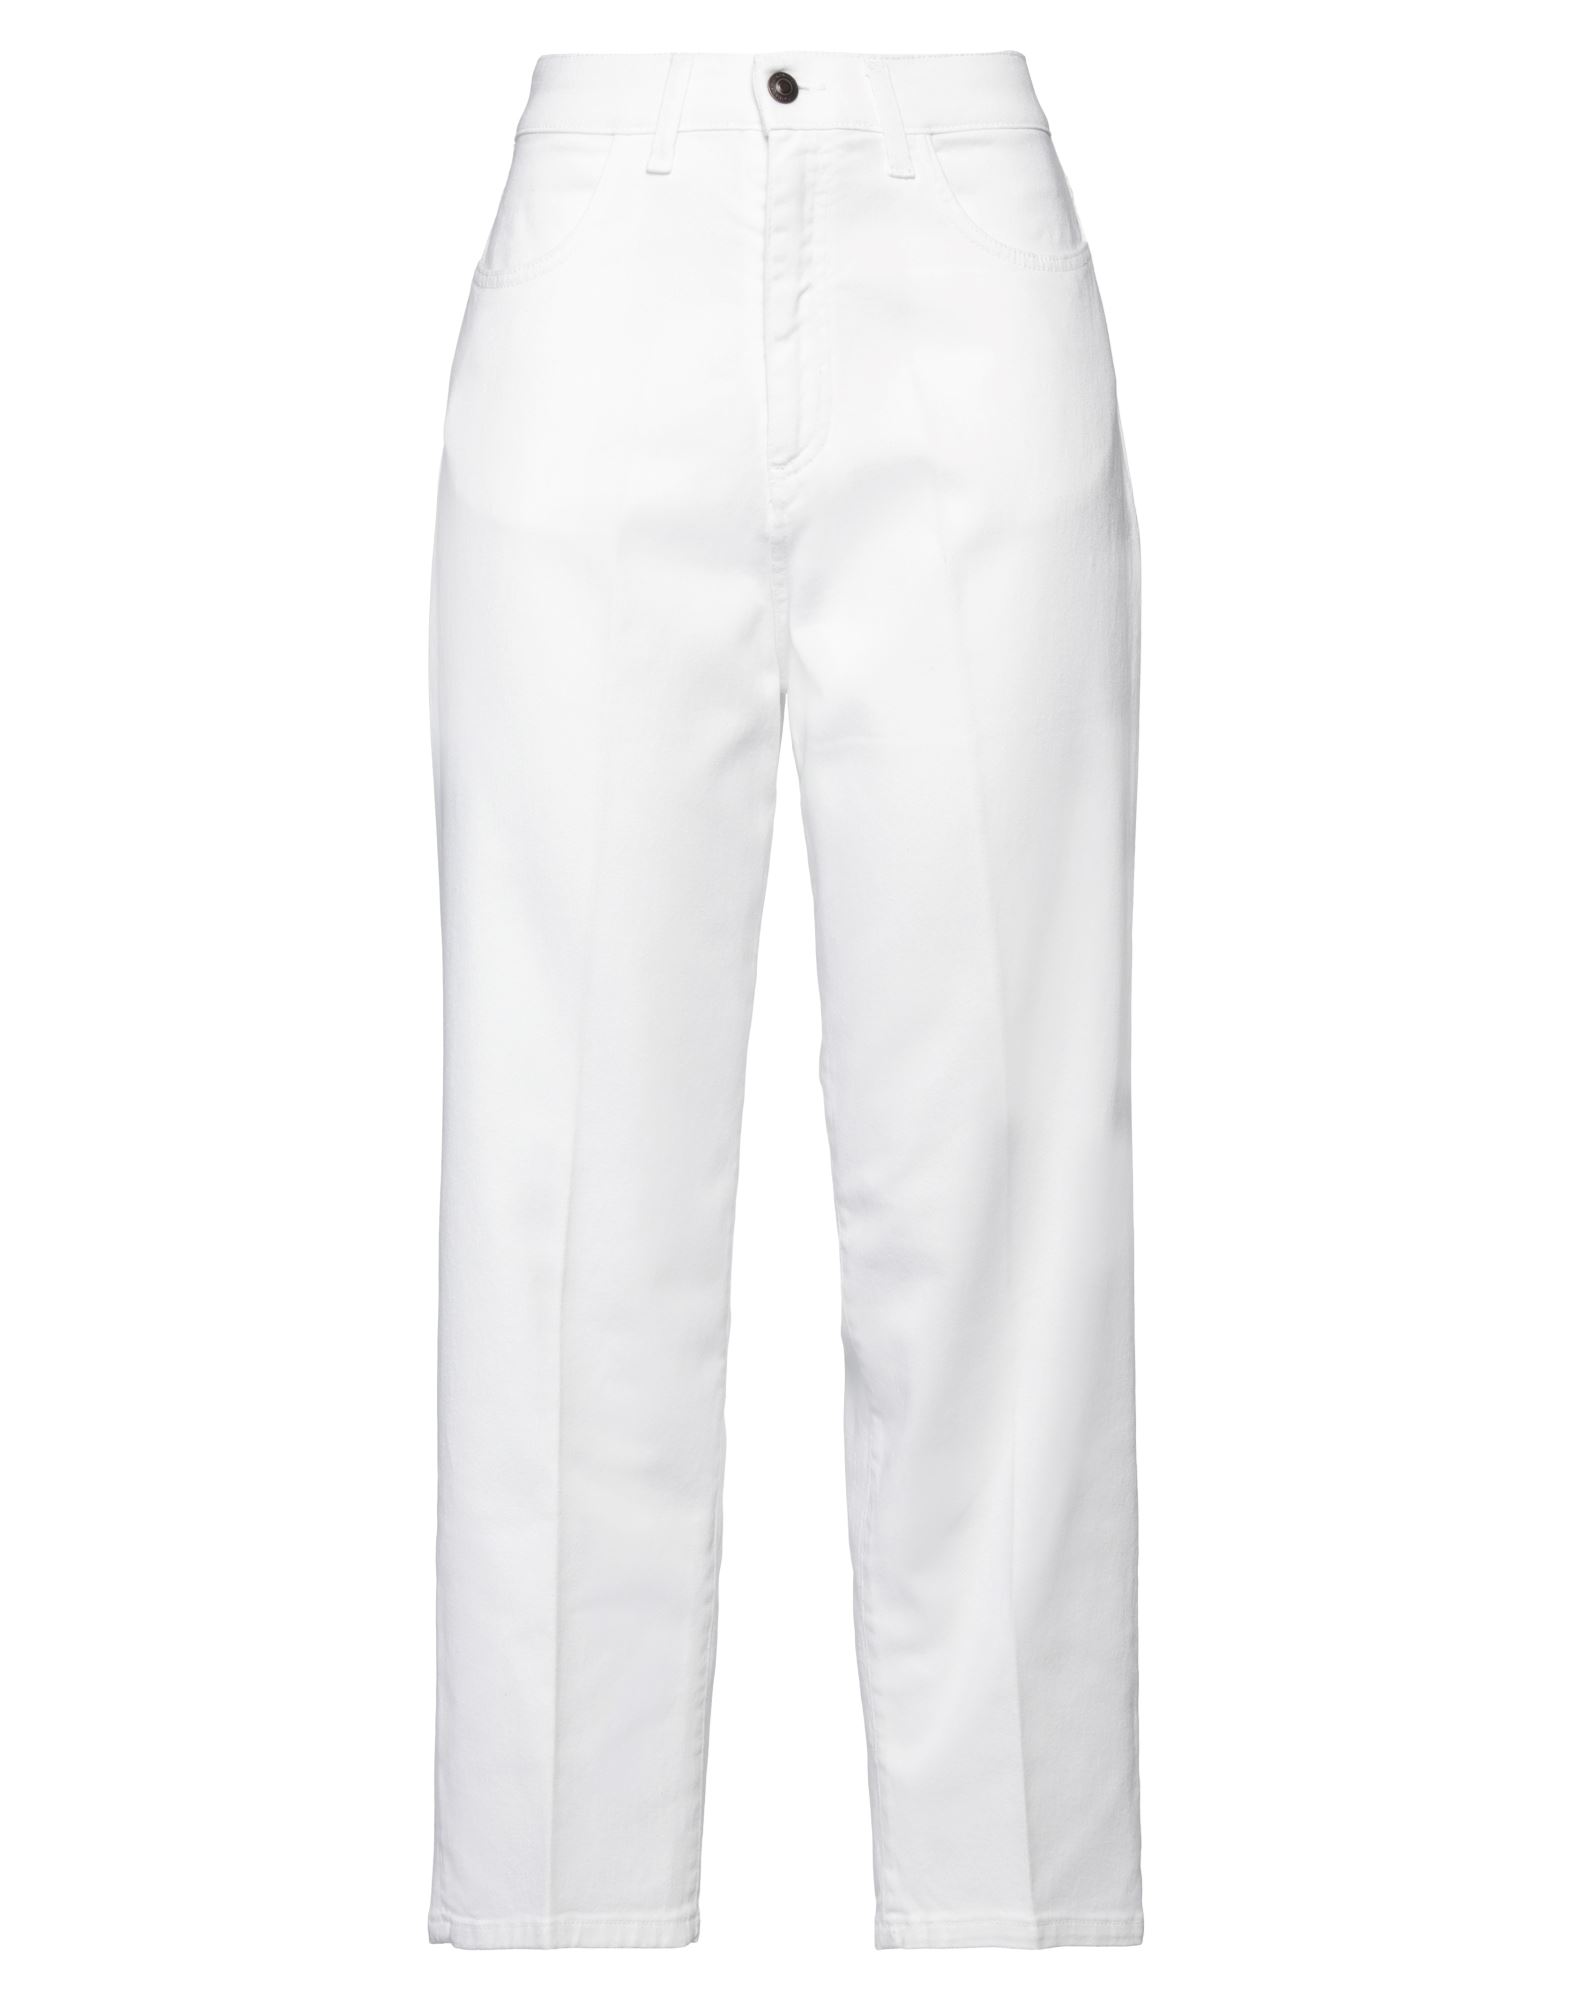 Bonheur Woman Pants White Size 31 Cotton